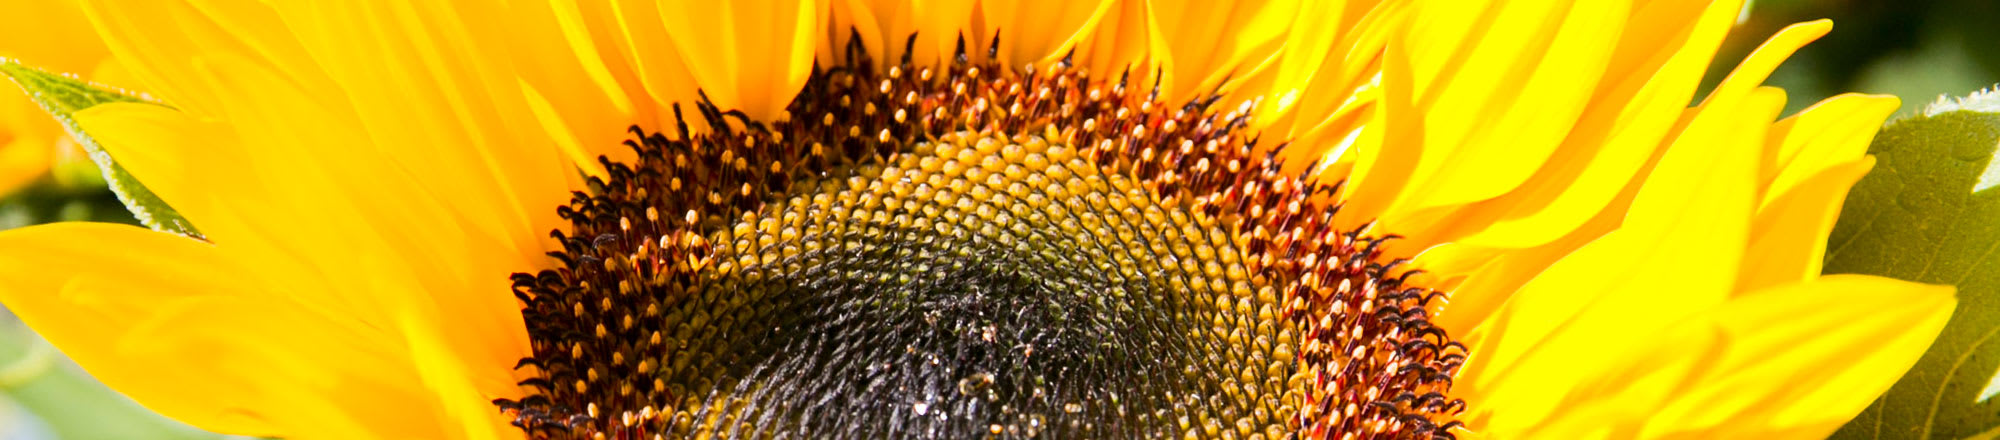 Sonnenblumen – göttlich und schön